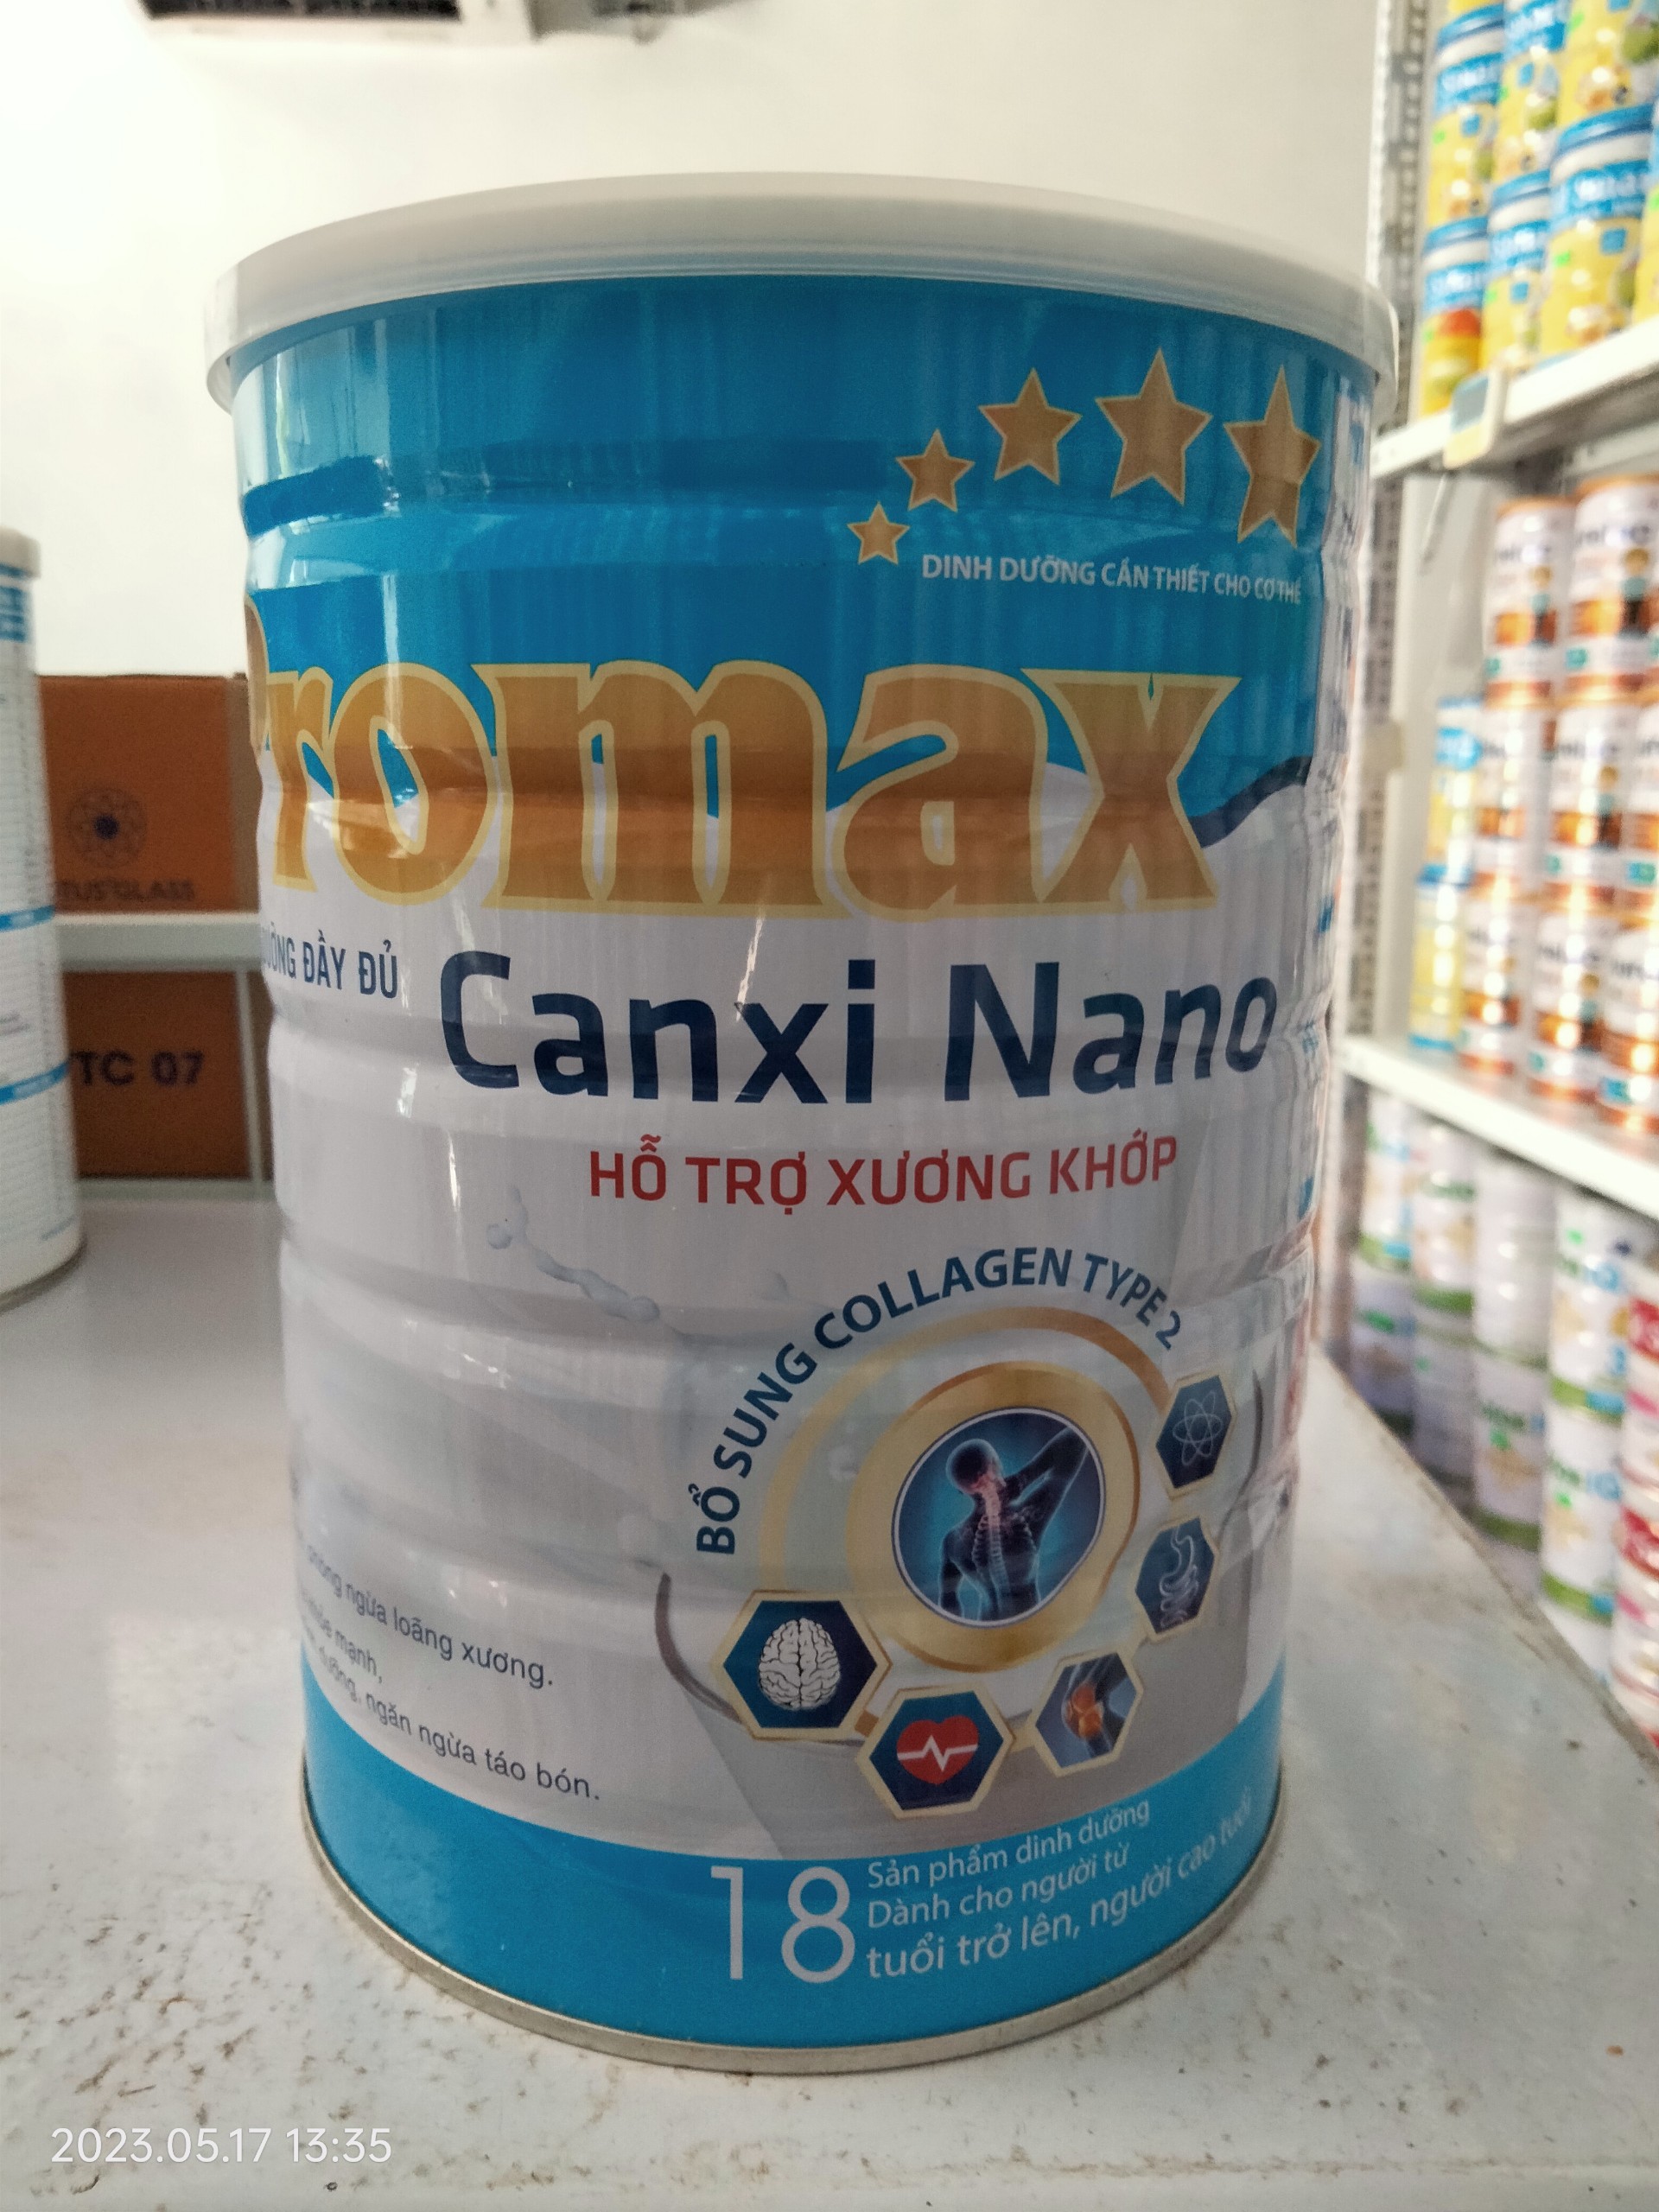 Sữa Promax canxi nano